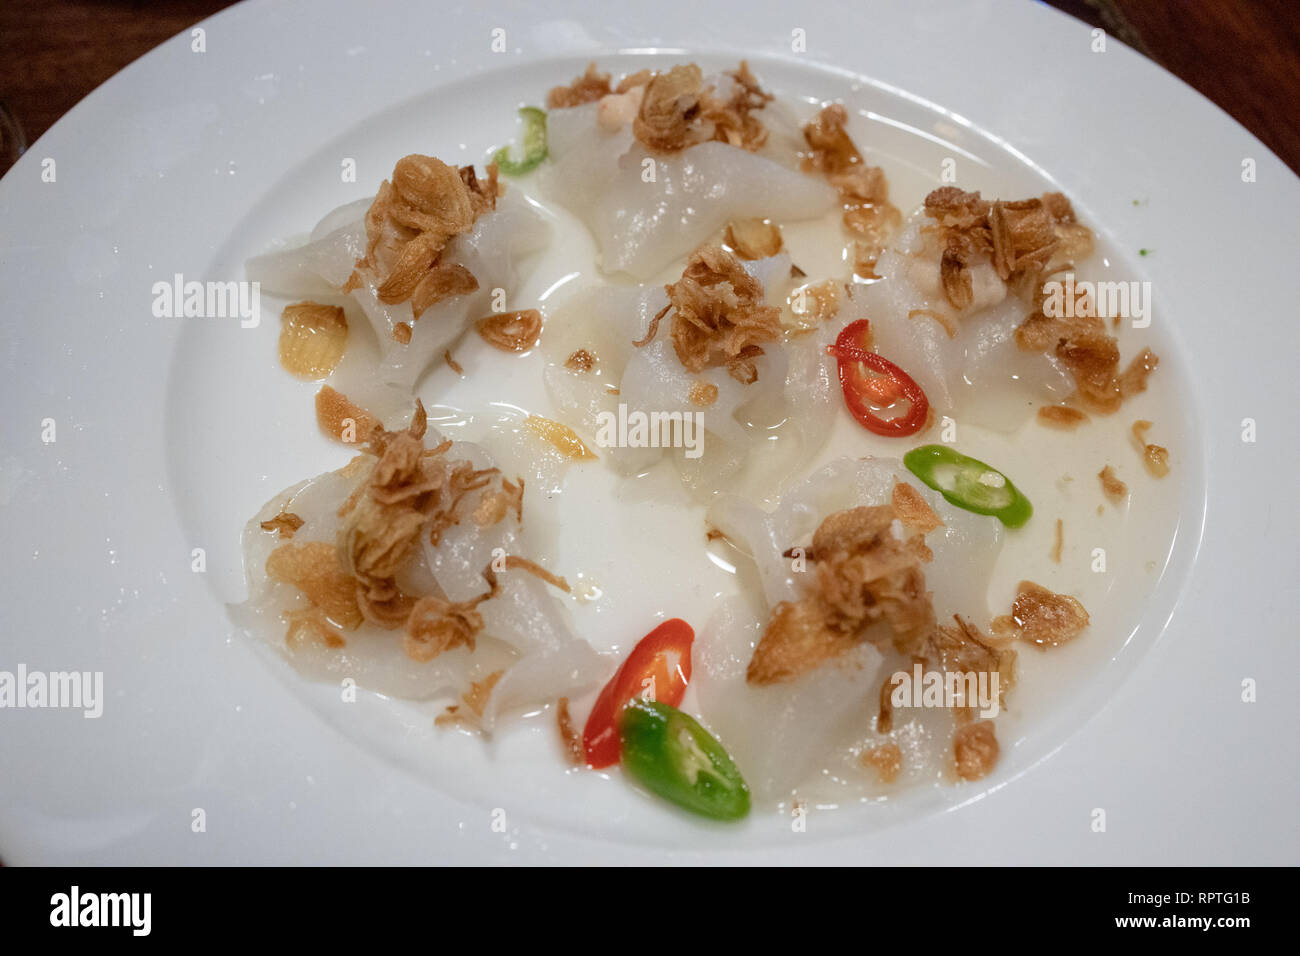 Rose blanche (banh bao) Crevettes cuites à la vapeur de riz : en quenelles à l'ail, oignon frit, et le piment, Mlle Vy's Restaurant, Hoi An, Vietnam Banque D'Images